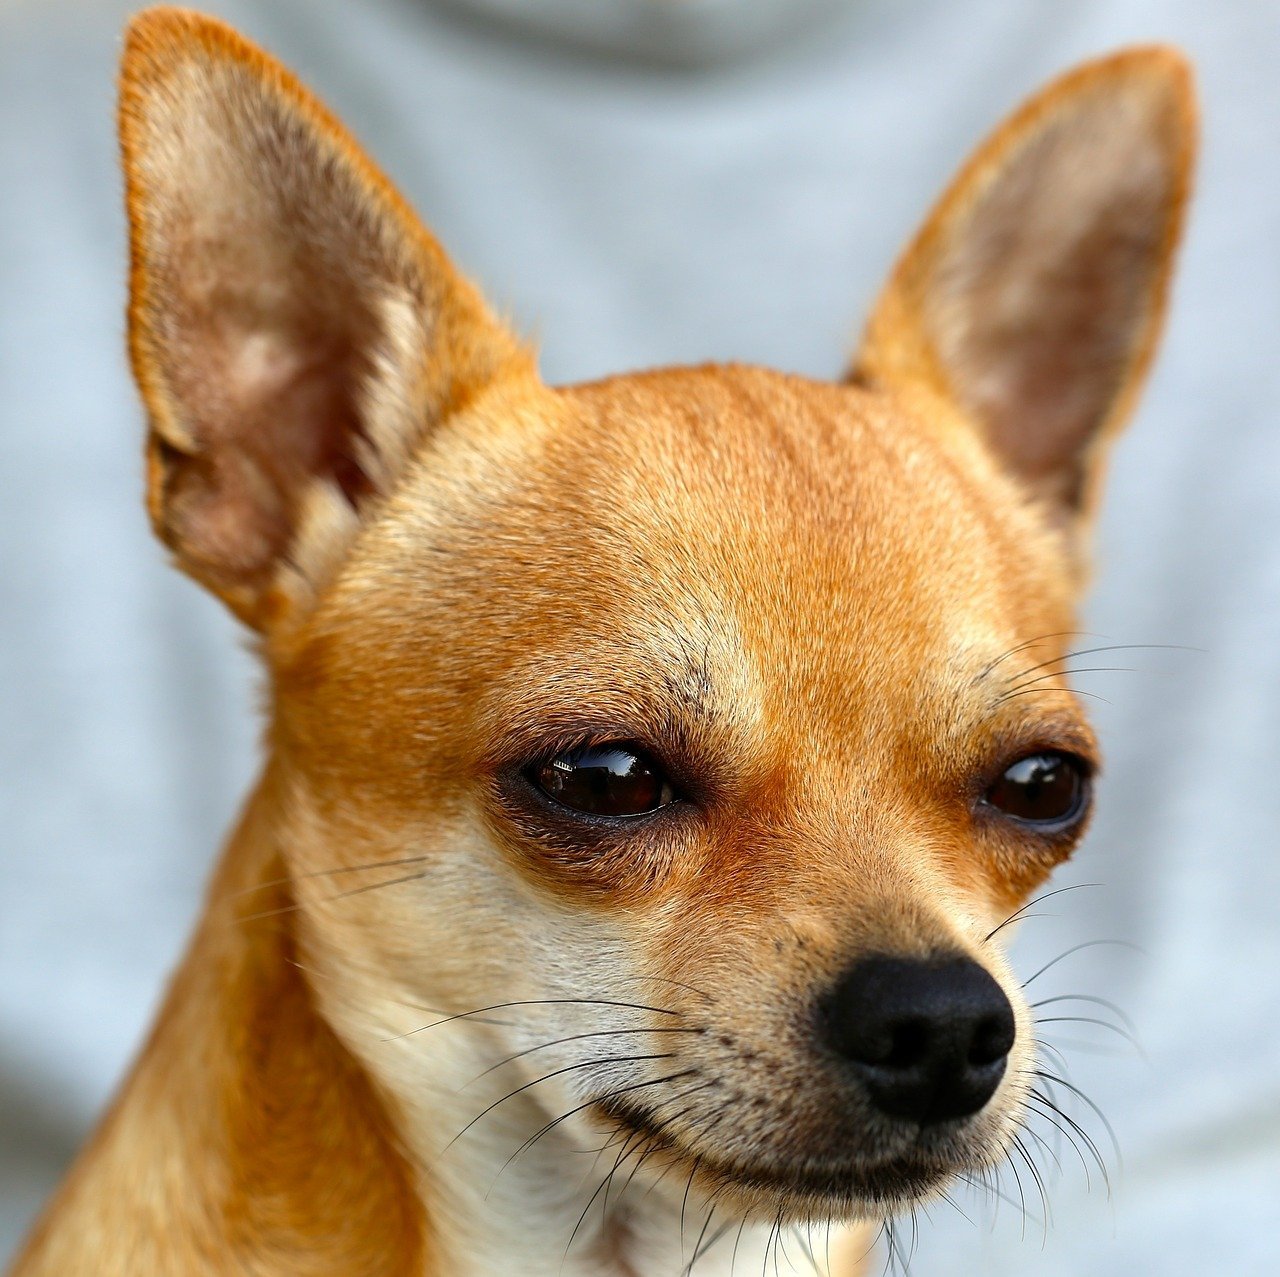 Nahaufnahme eines Chihuahuas mit aufgestellten Ohren und einem misstrauischen Gesichtsausdruck | Quelle: Pixabay/a-mblomma